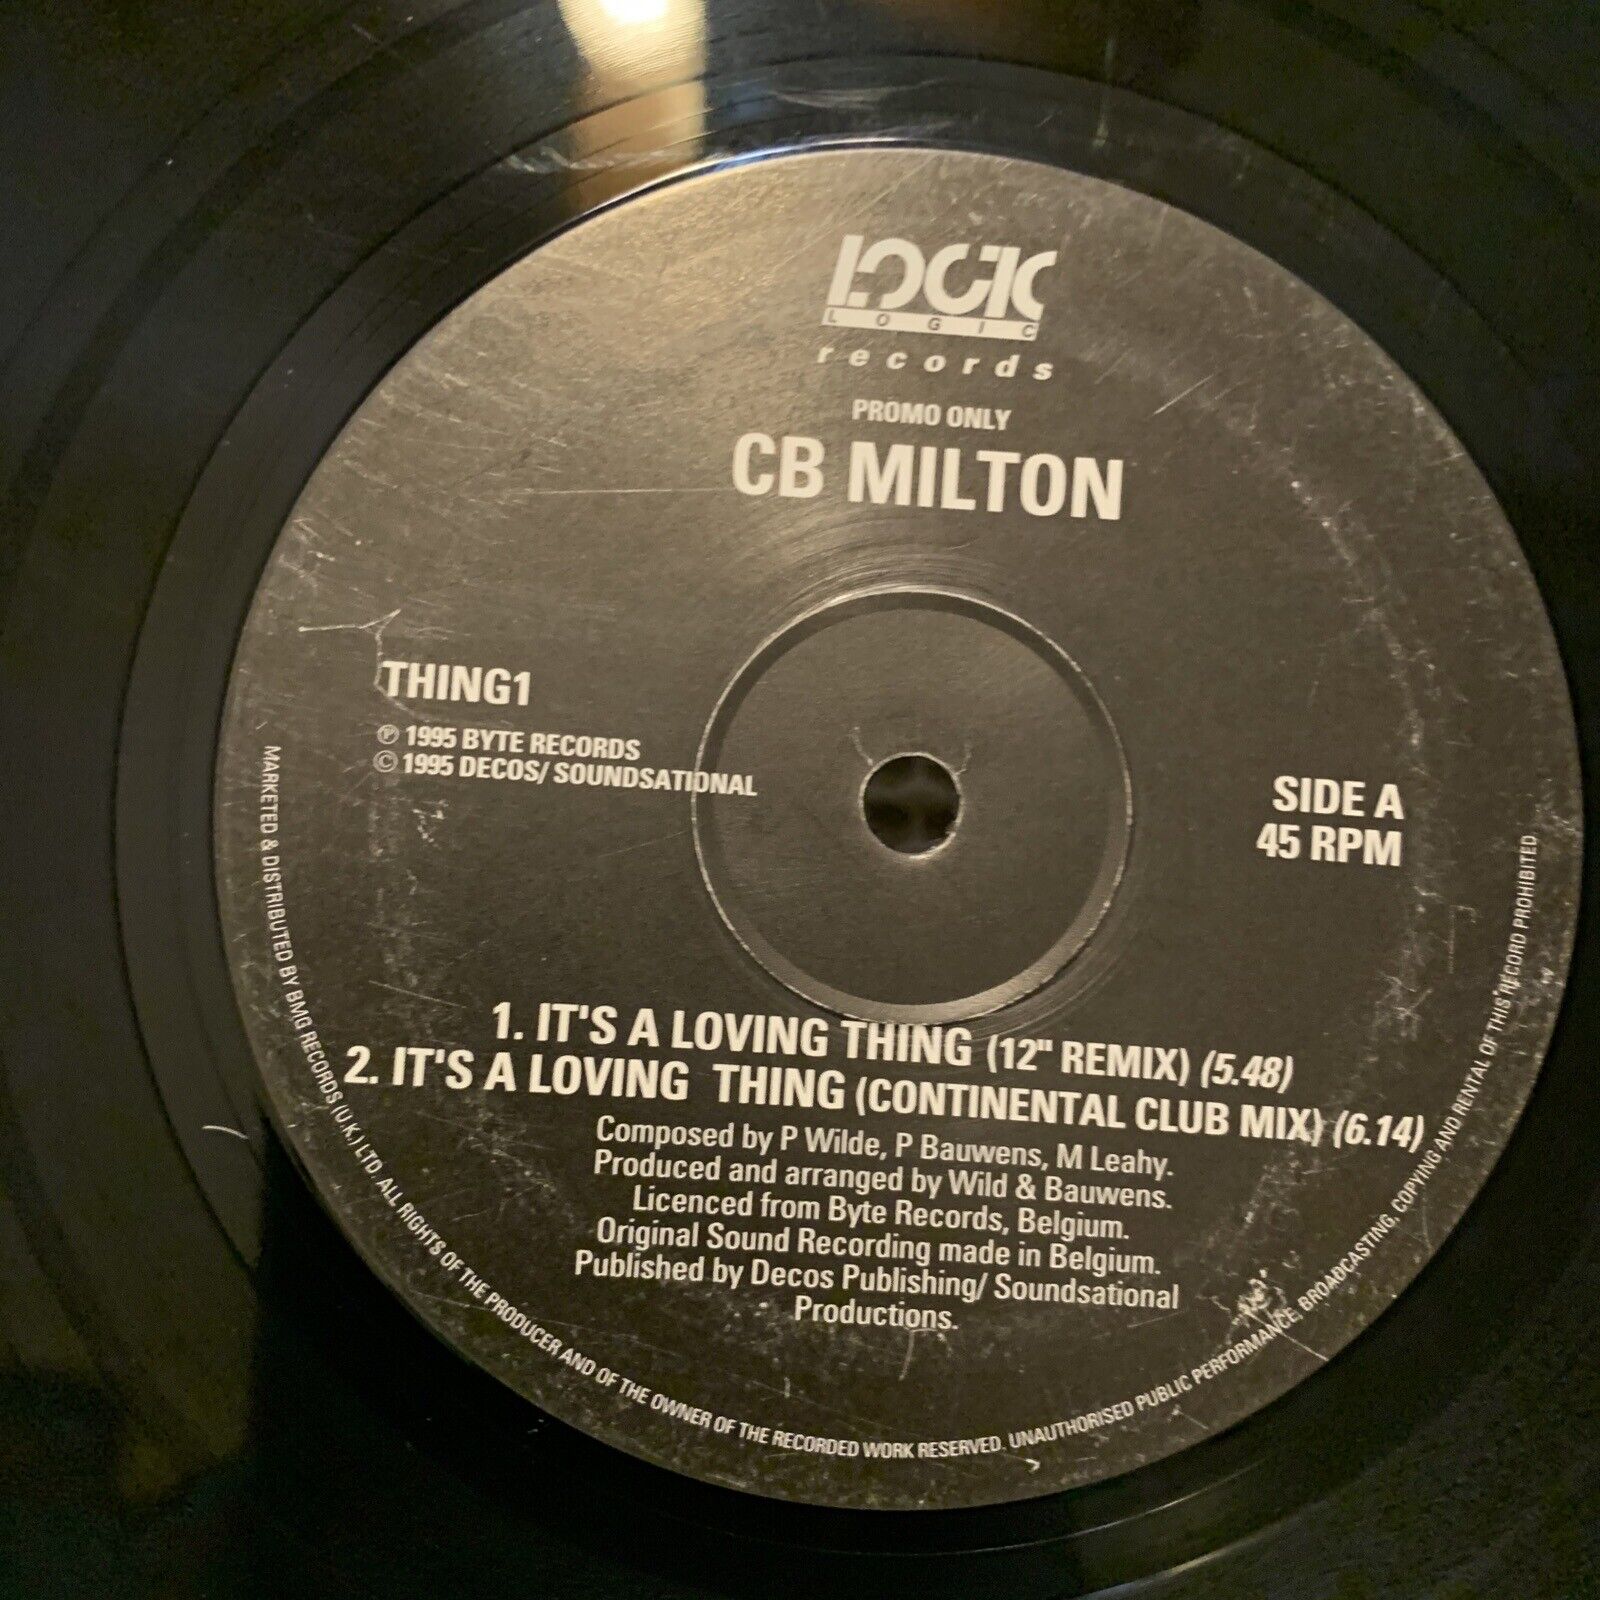 CB MILTON It's A Loving Thing 1994 UK Press 4-track 12" Vinyl Single DJ Promo